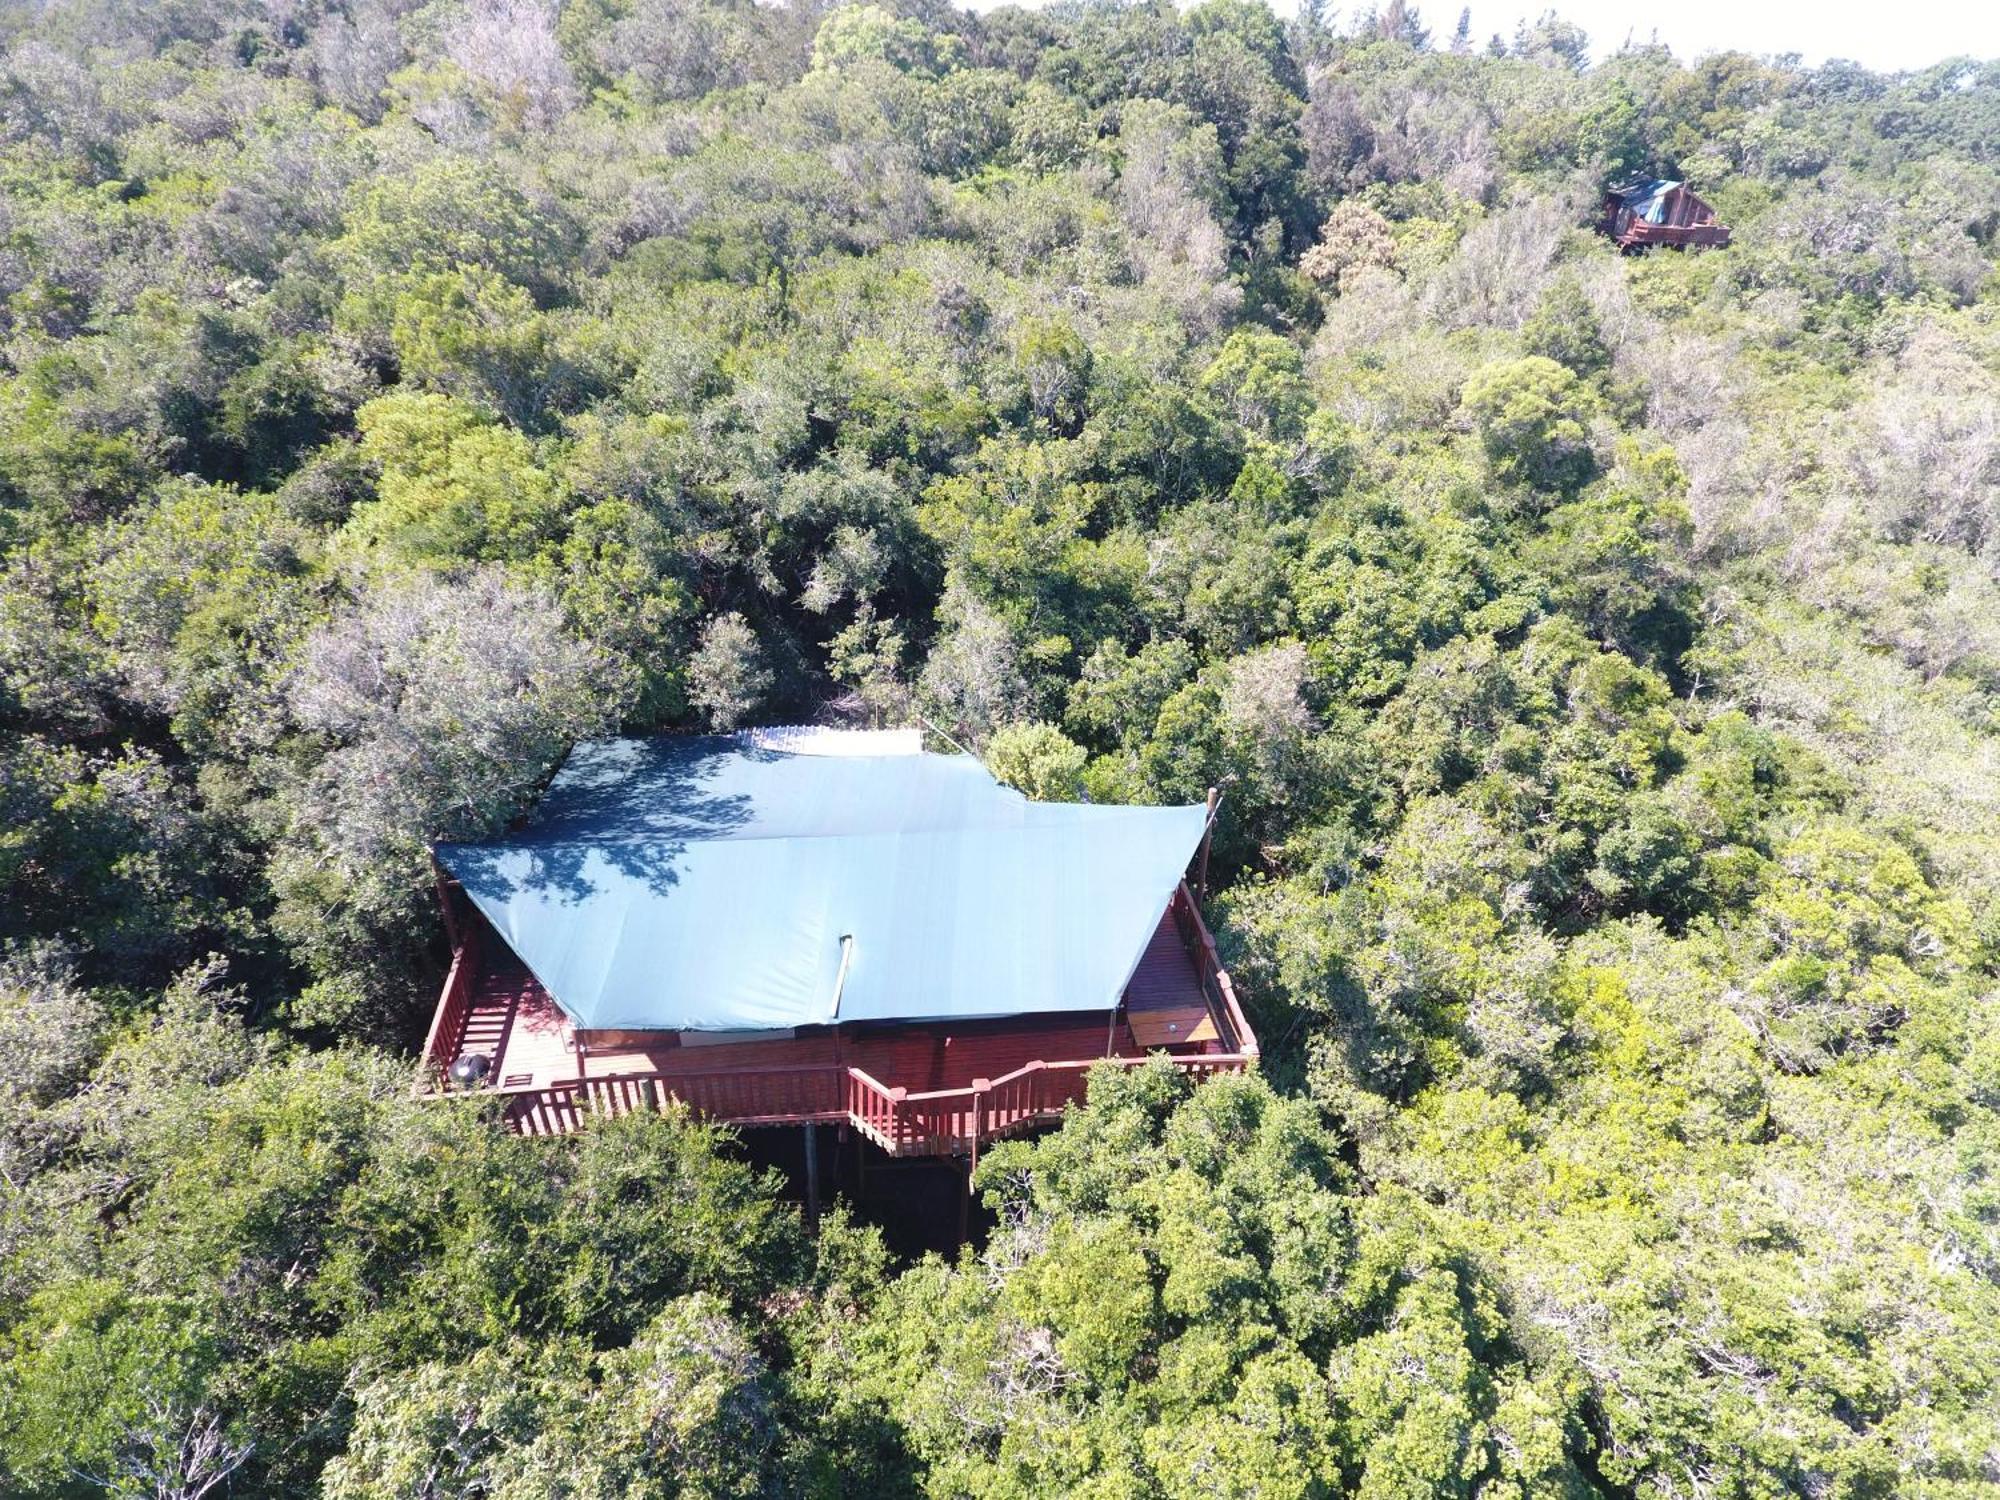 Teniqua Treetops Karatara Settlement Extérieur photo